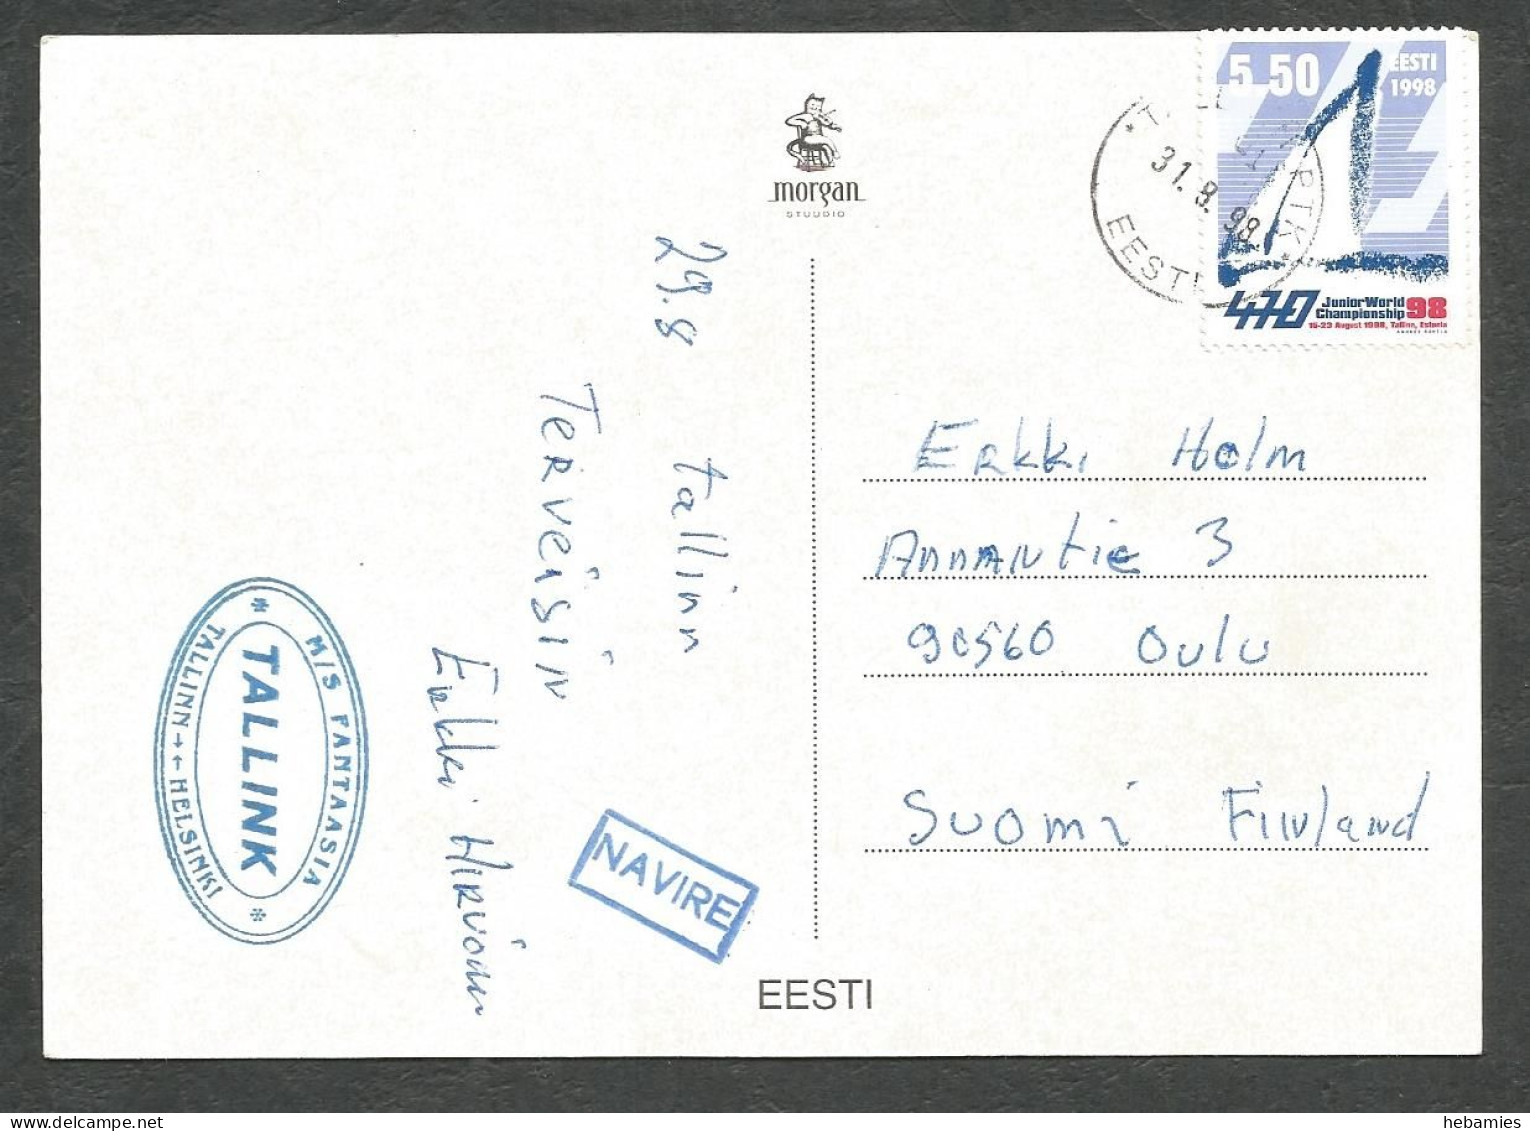 ESTONIAN CASTLES - Special Ship Stamped M/S FANTASIA / TALLINK - ESTONIA - EESTI - - Schlösser